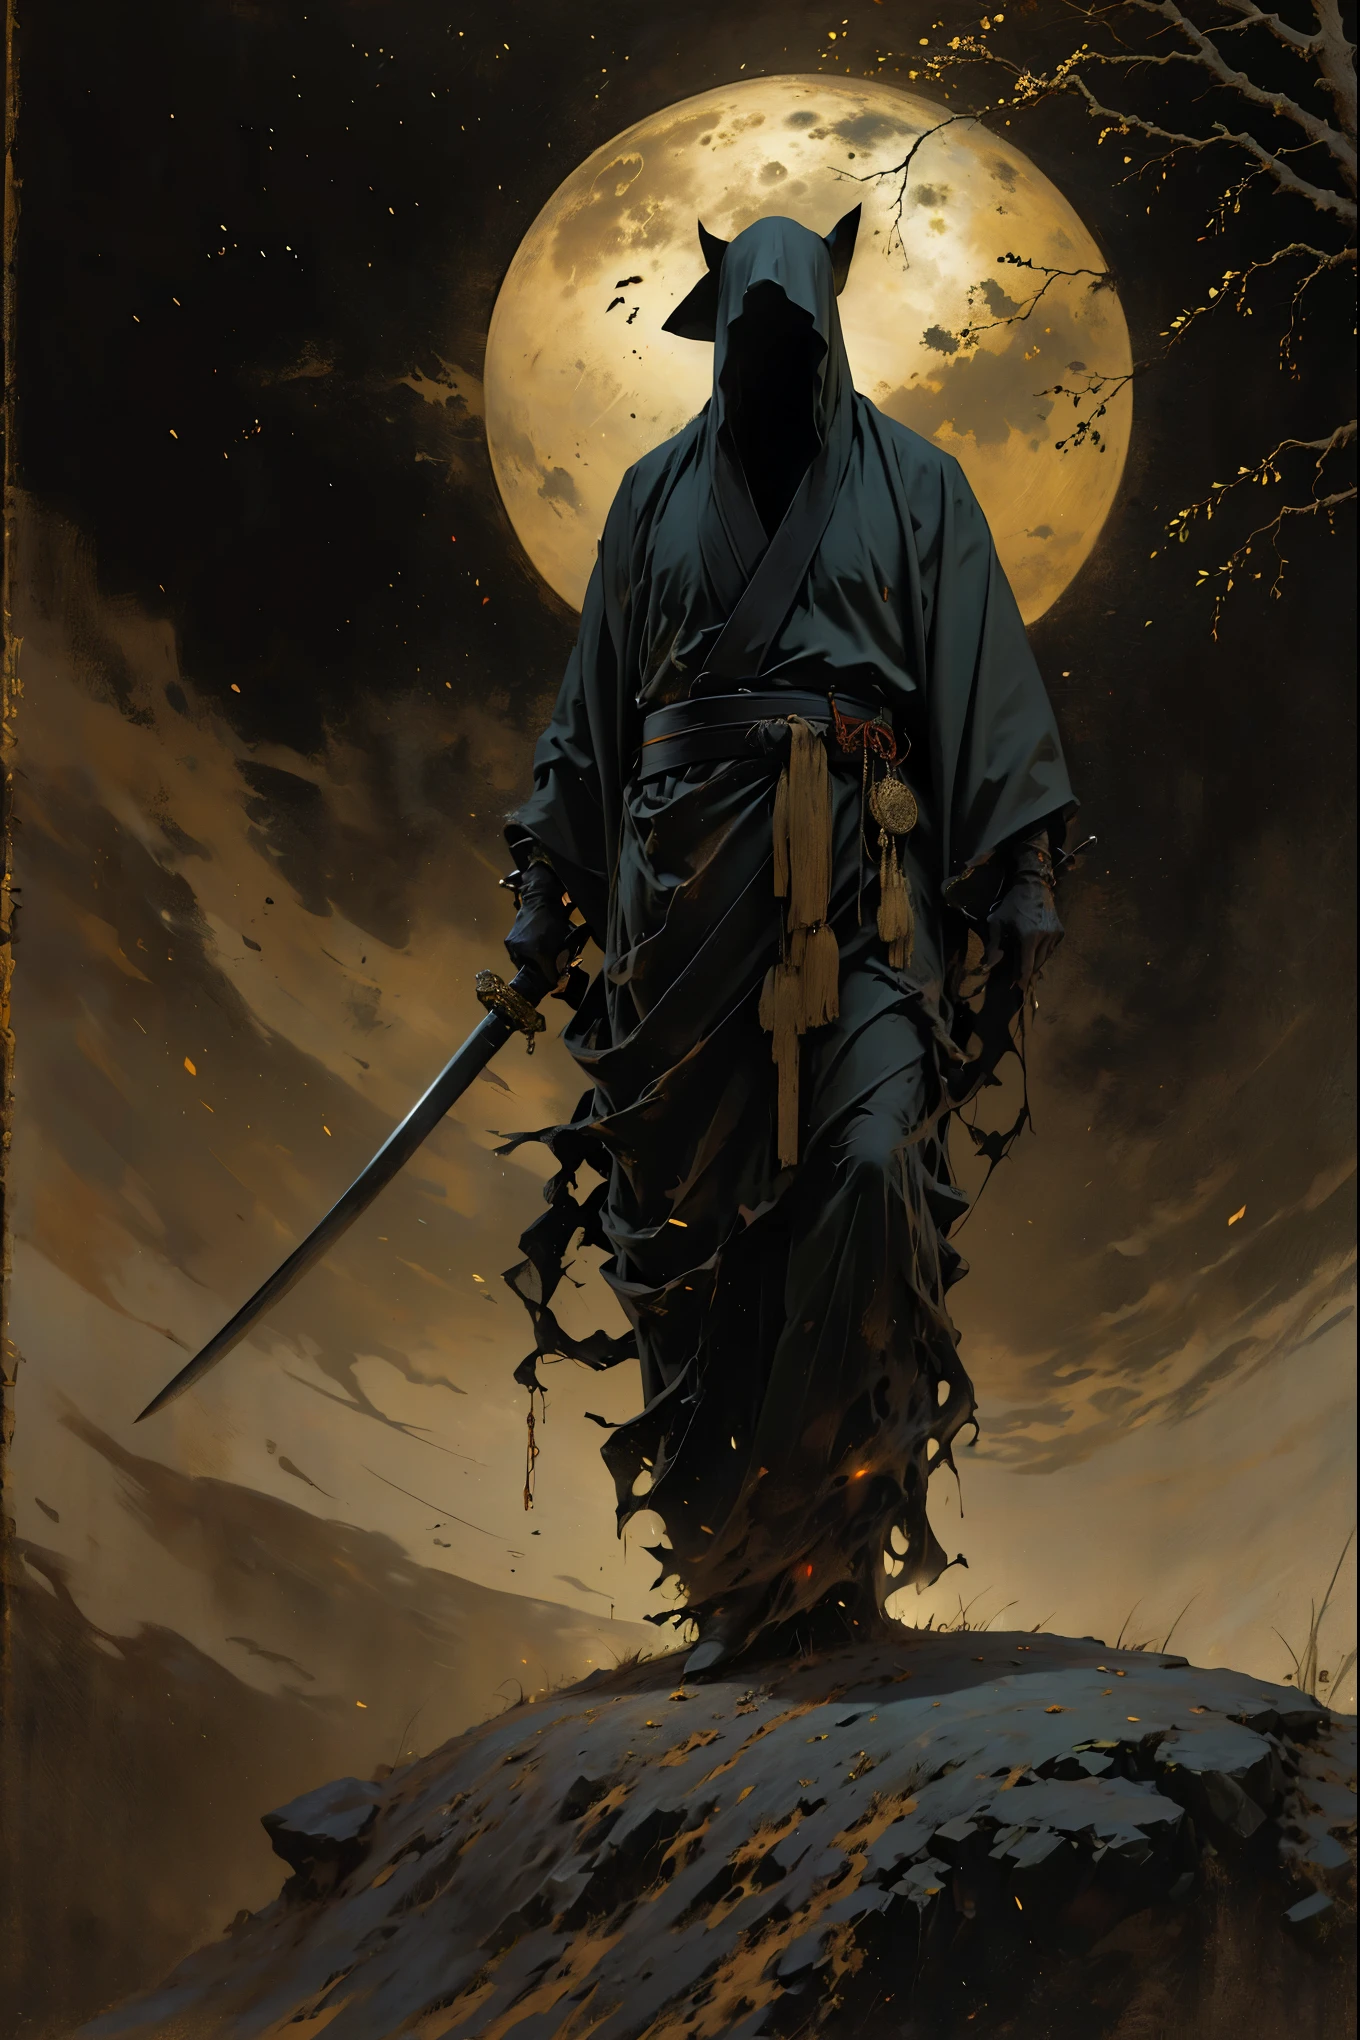 (beste Qualität, 4k, highres, Meisterwerk:1.2), ultra-detailliert, (Realistisch, photoRealistisch, photo-Realistisch:1.37), ein als Samurai verkleideter Mann steht im Regen, Einen Bambushut tragen (scheitern) auf seinem Kopf. Er ist von einem dichten Wald umgeben, lebendig mit den Geräuschen der Natur. Es ist eine mondhelle Nacht, und die Dunkelheit trägt zur geheimnisvollen Atmosphäre bei. Der Mann trägt einen schwarzen Kimono mit neonroten Streifen, die im Dunkeln leuchten, lässt ihn aus der Szene hervorstechen. Sein Schwert (Katana) ist aus der Scheide, einsatzbereit angesichts drohender Katastrophen.